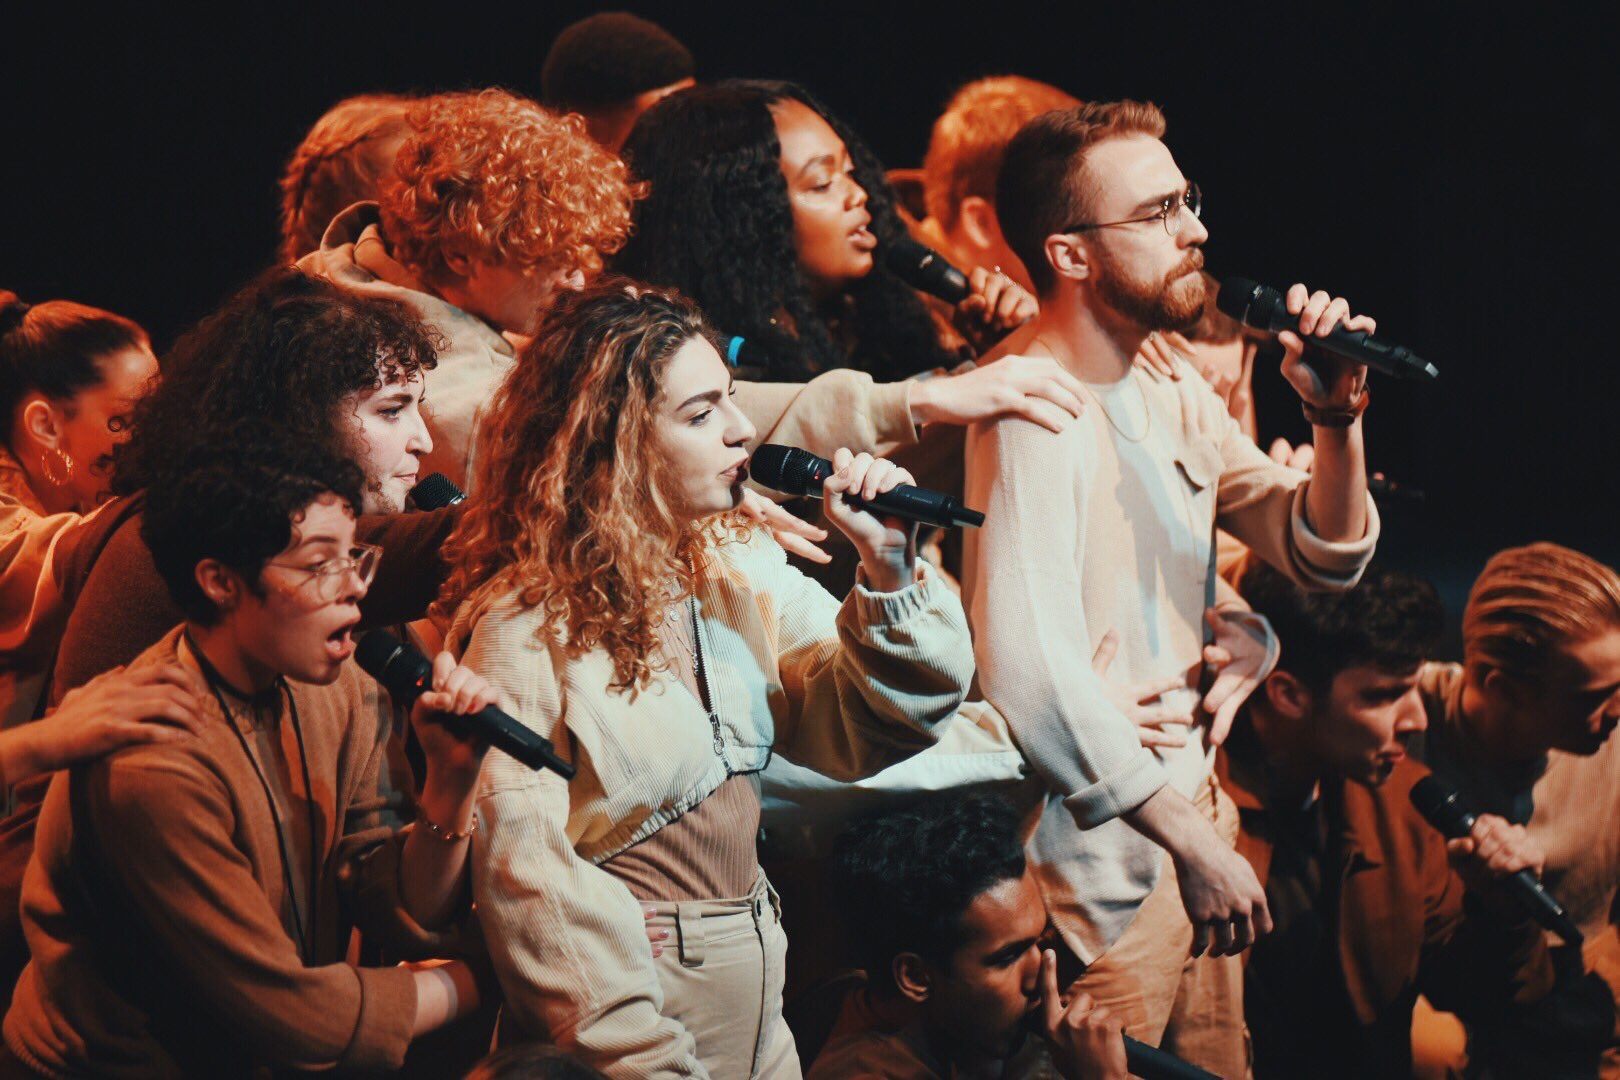 An NYU studen acapella club singing.